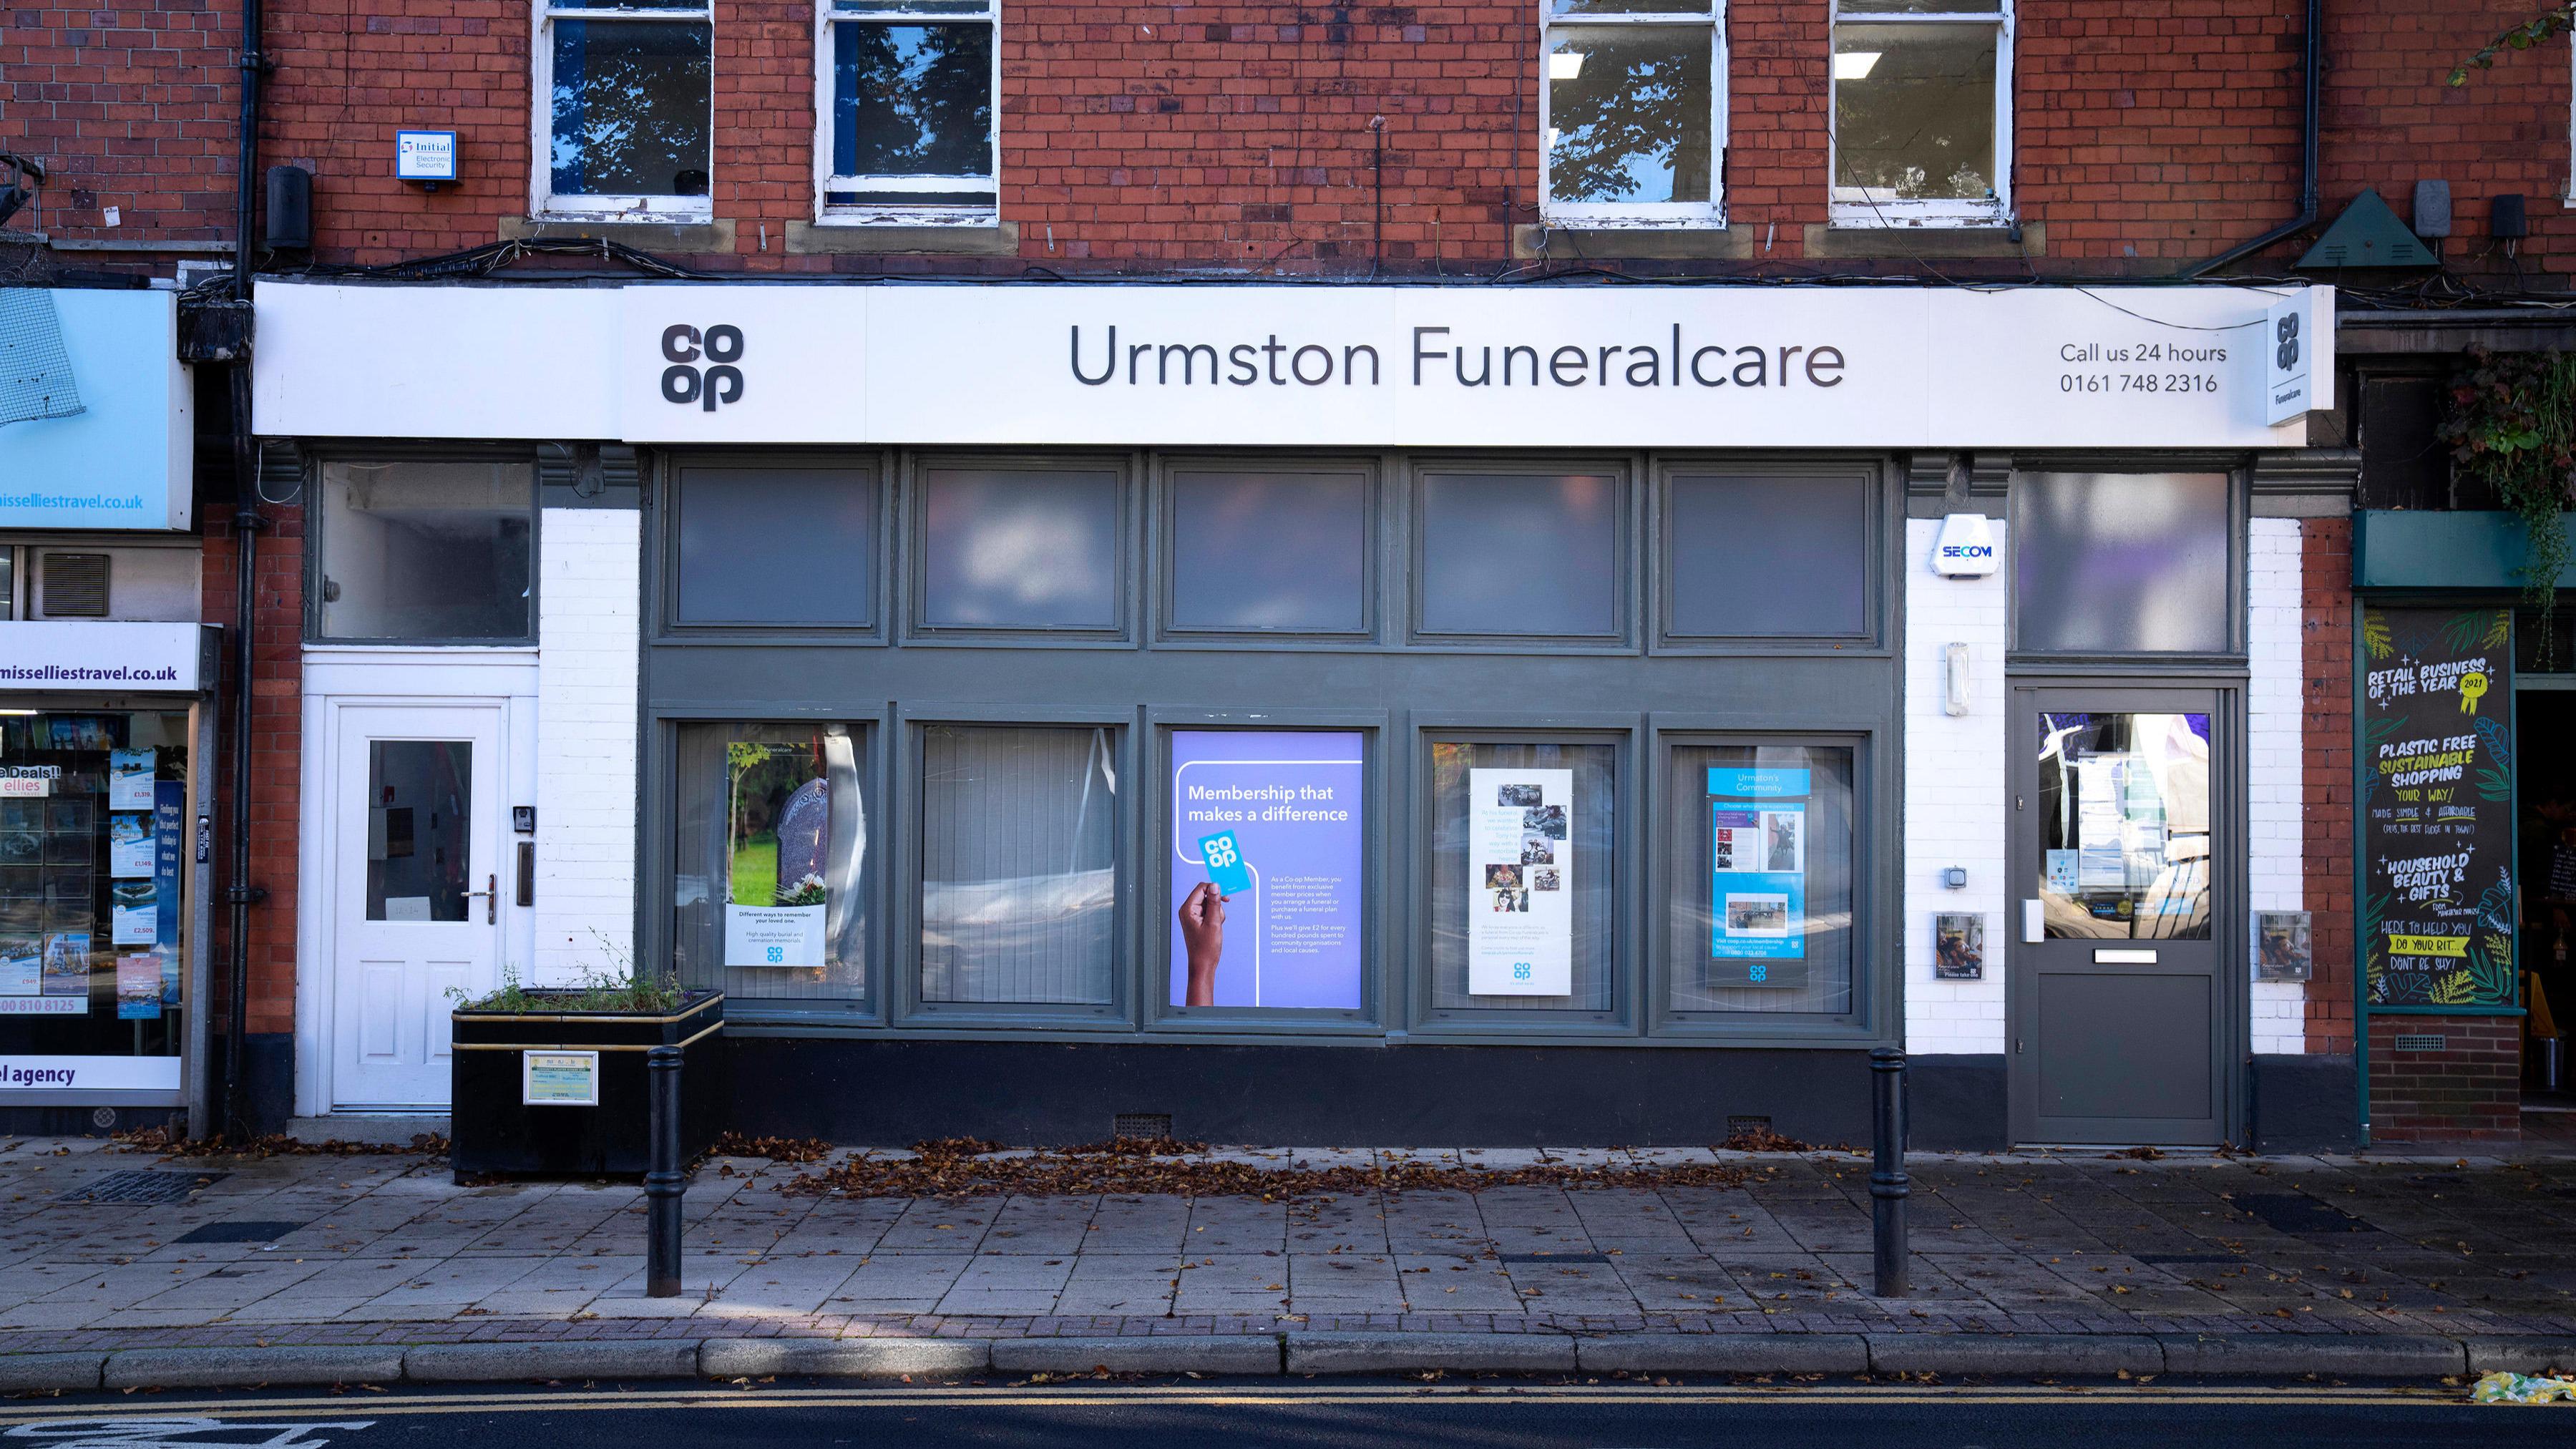 Images Urmston Funeralcare